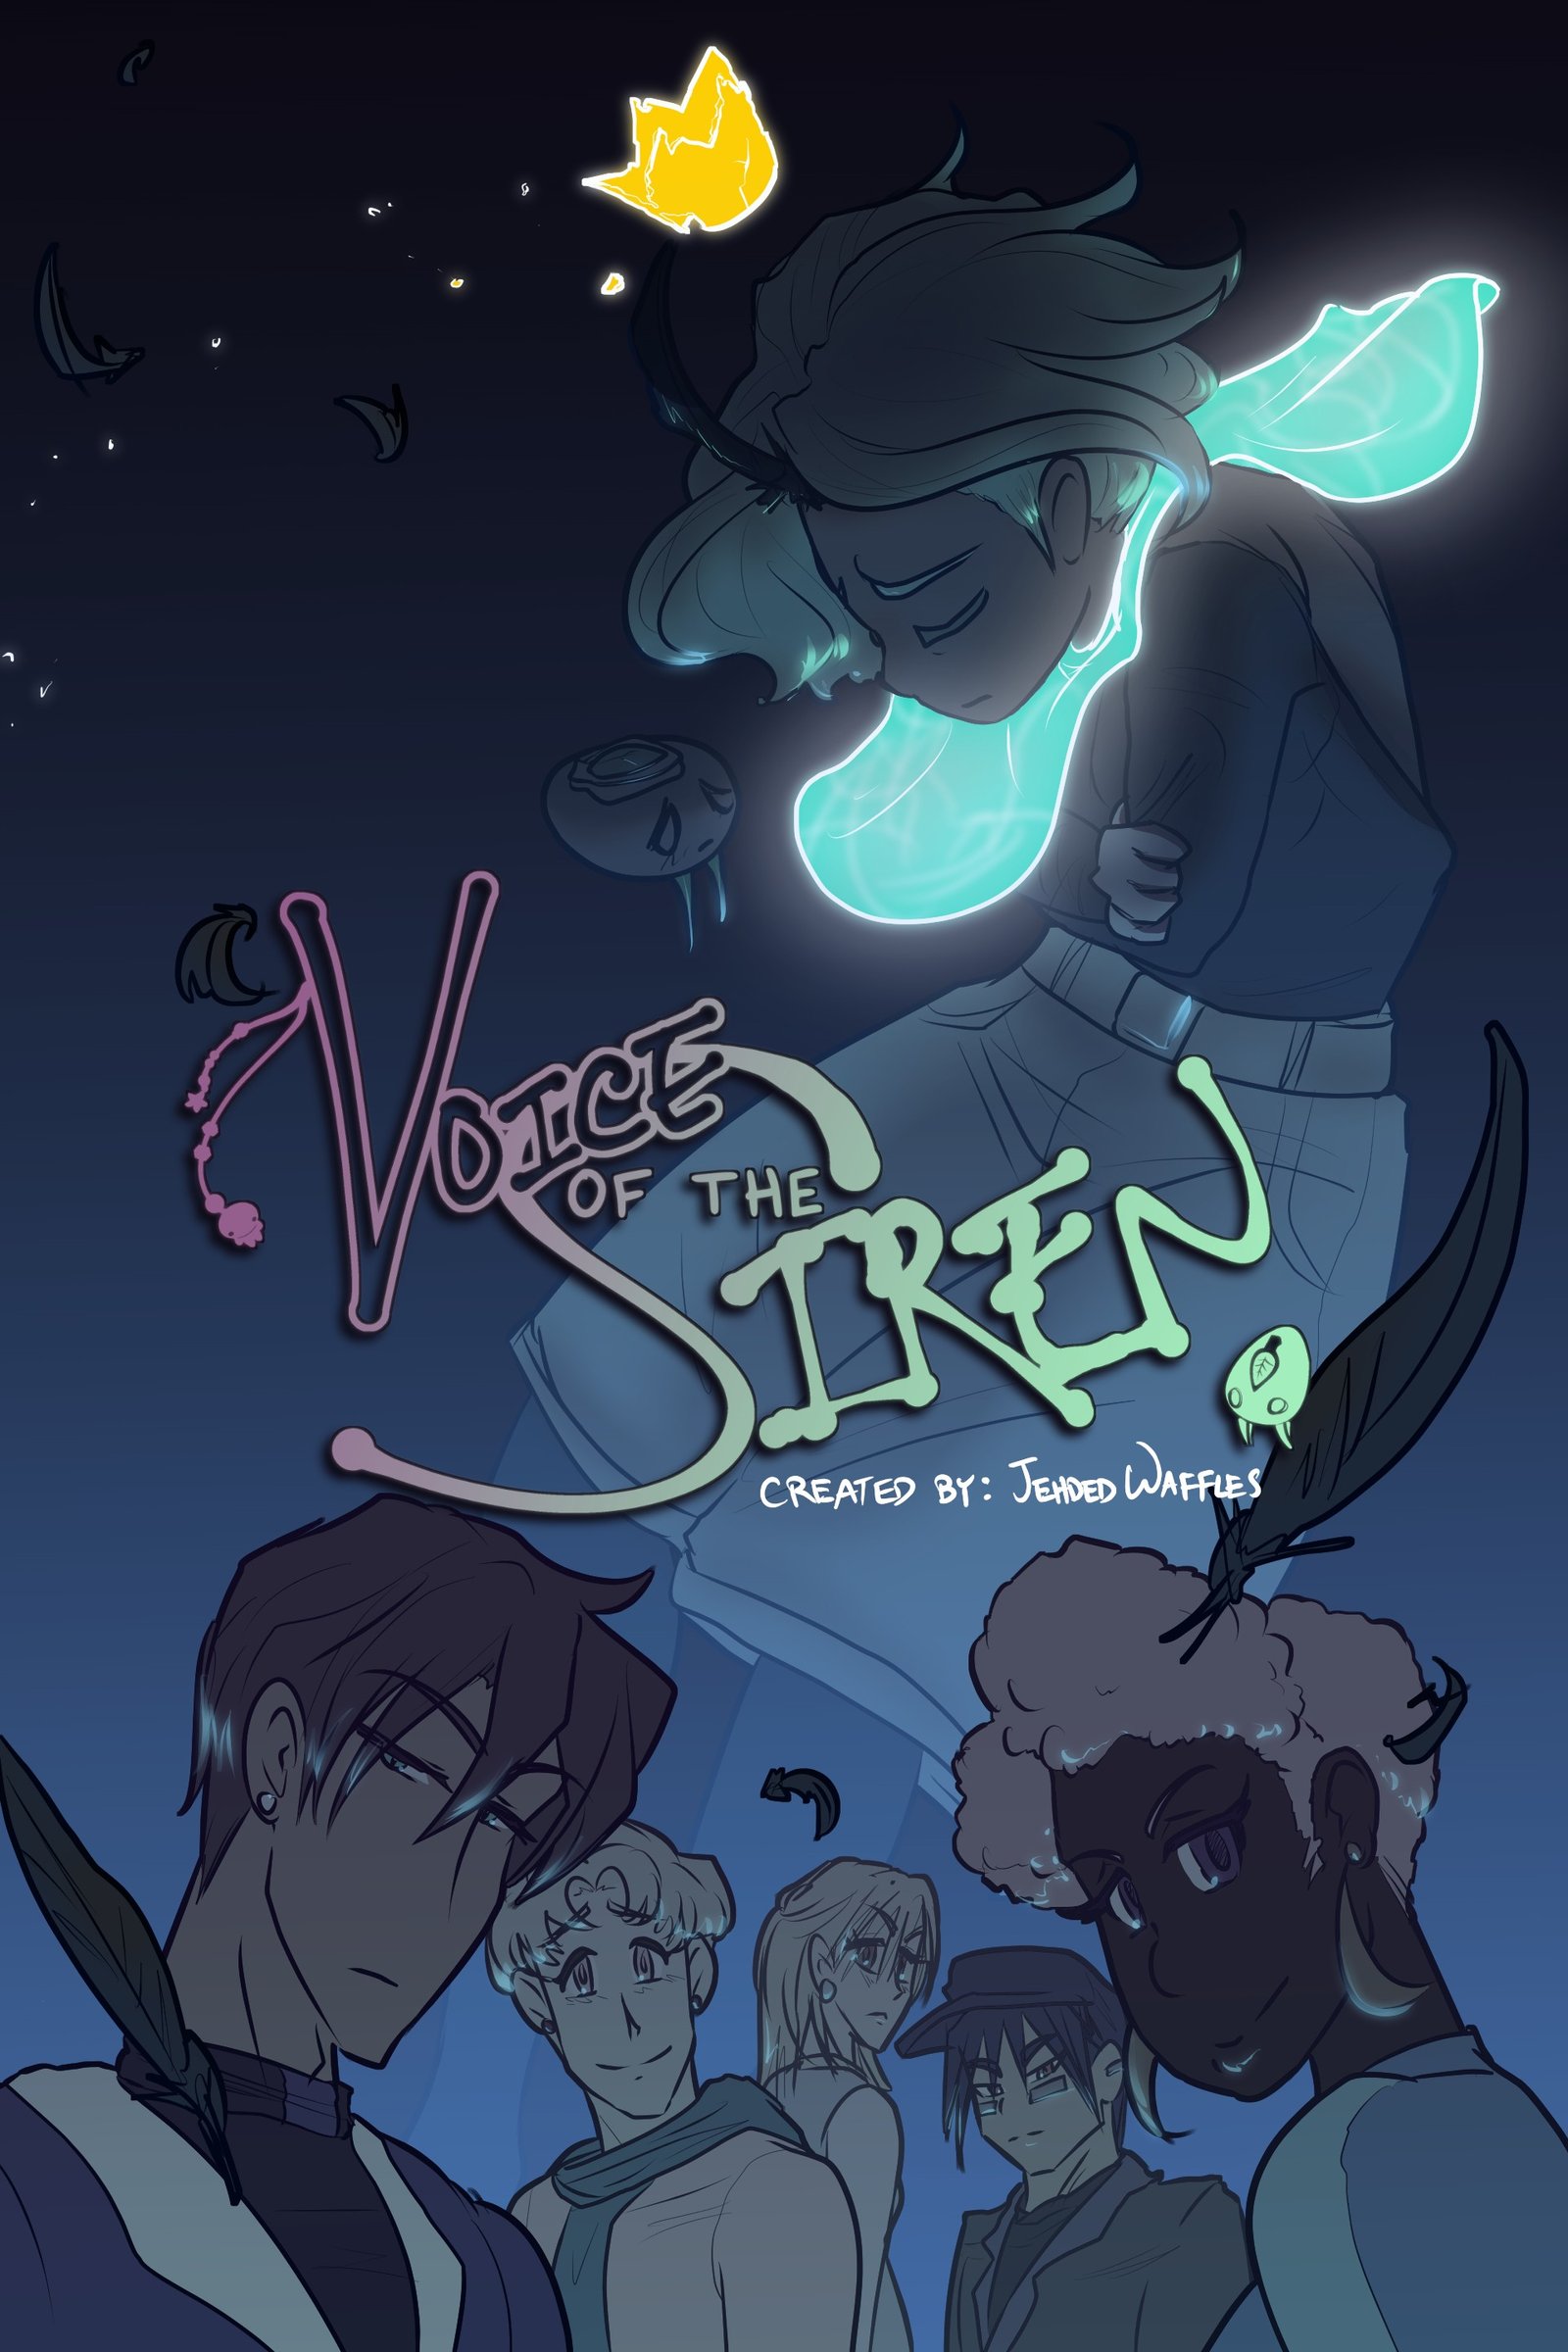 Voice of the Siren